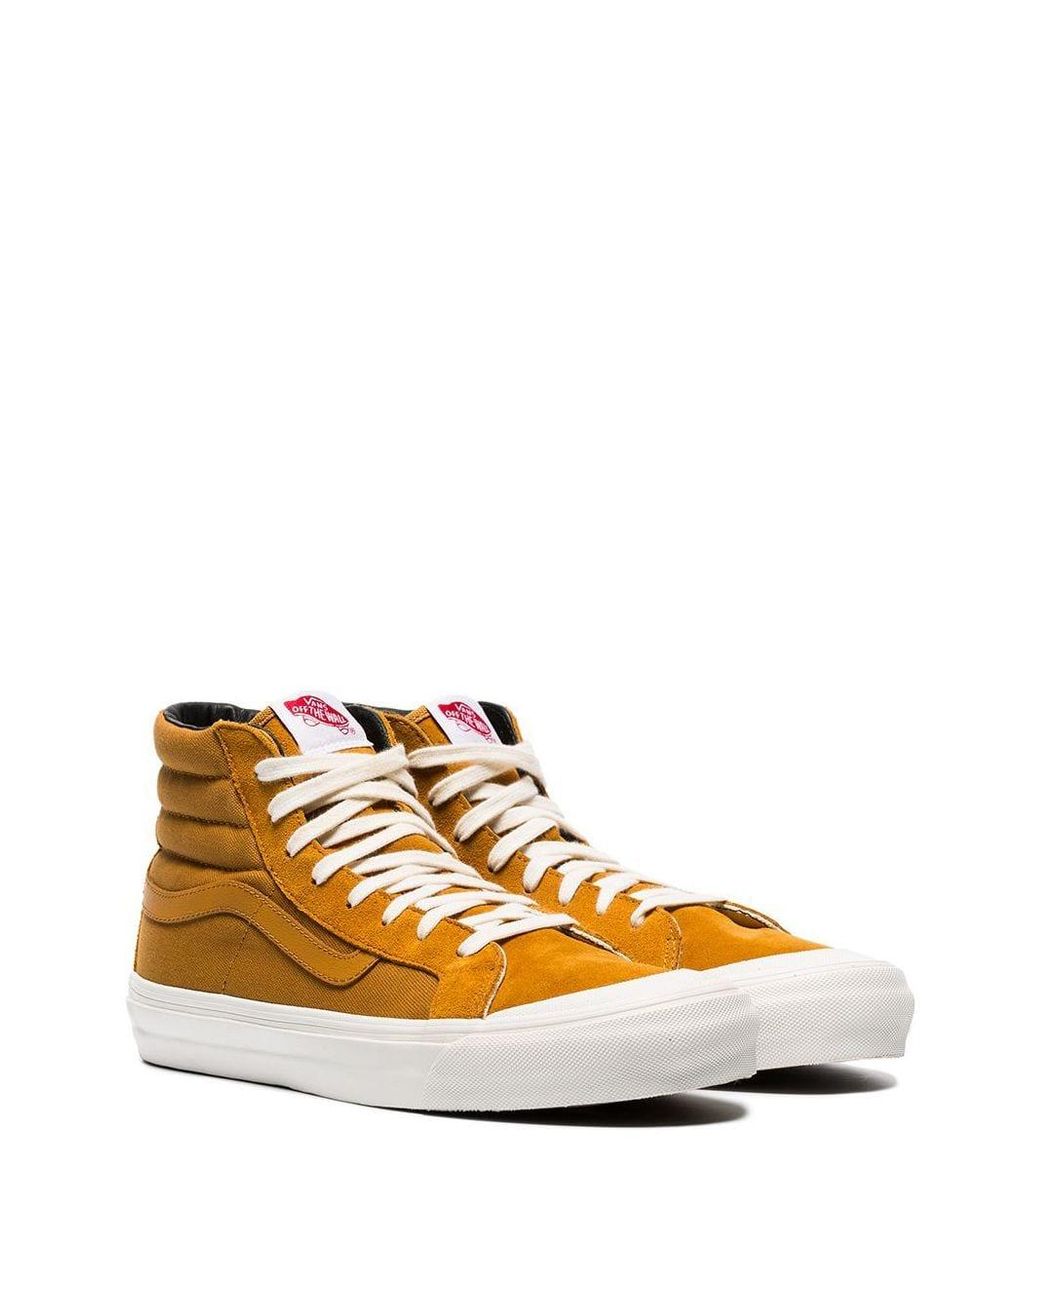 Vans Mustard Yellow Og Style 138 Hi-top Suede Sneakers for Men | Lyst